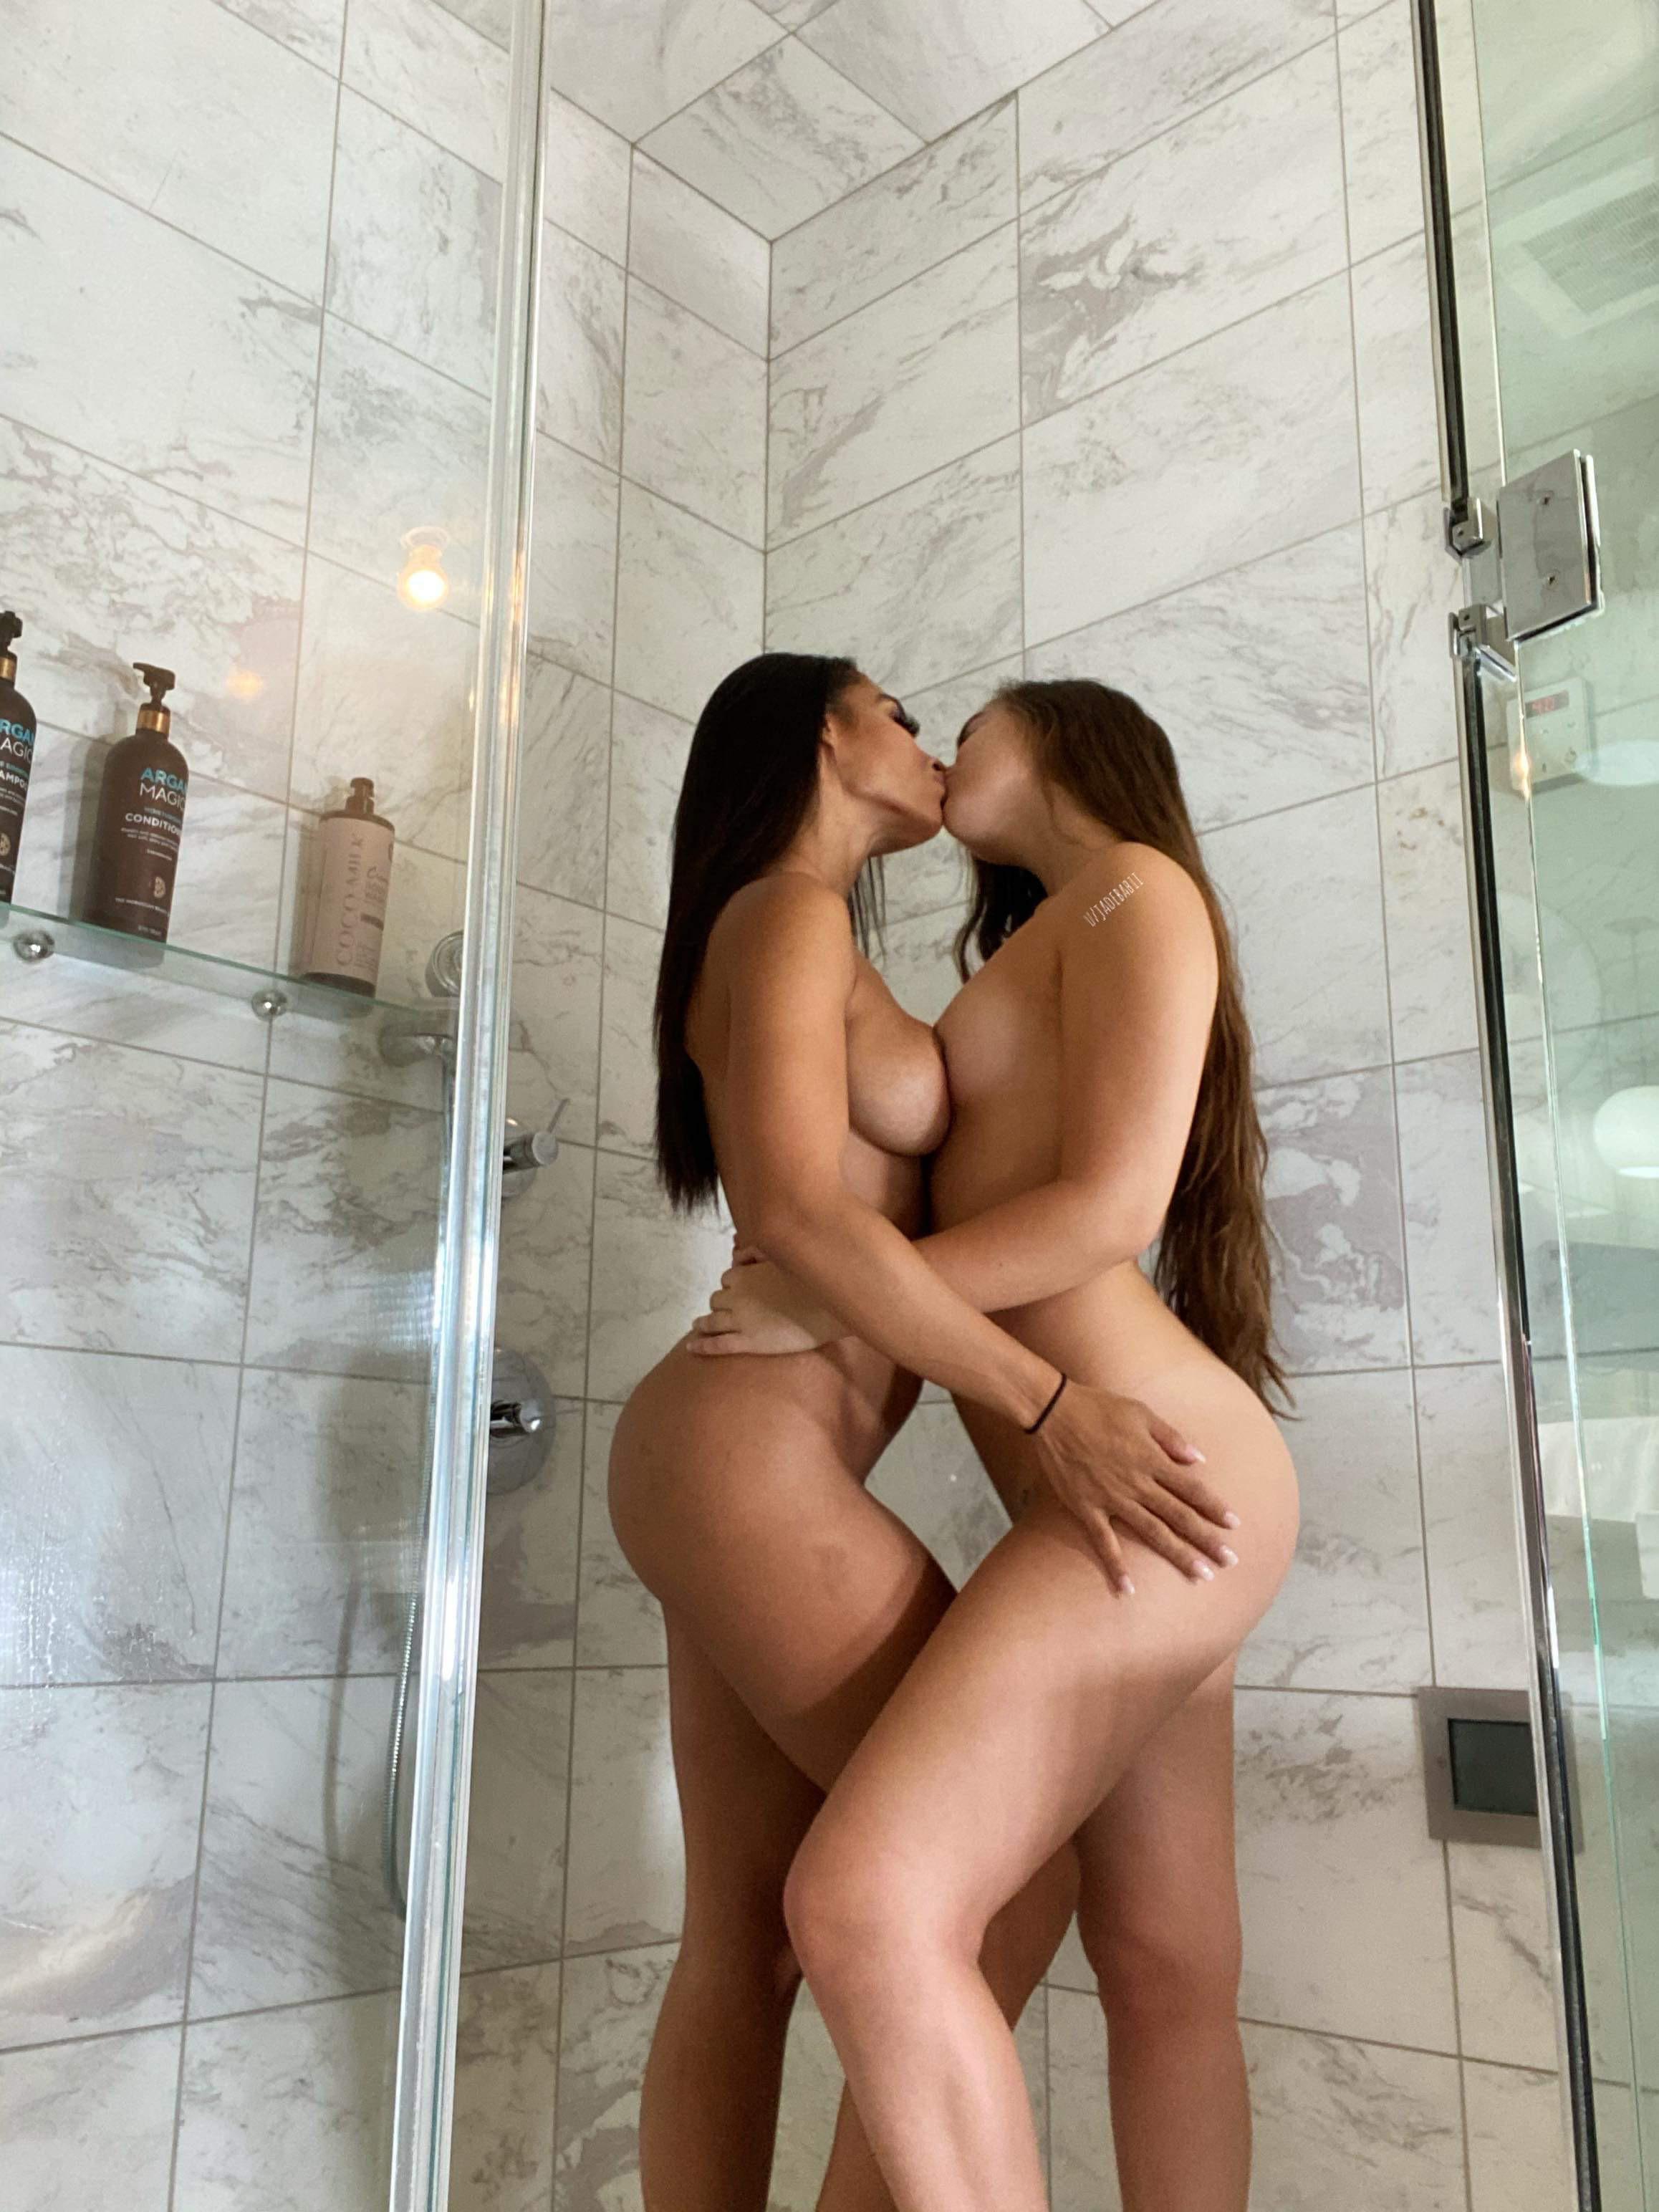 Hot Shower Porn Pic - EPORNER